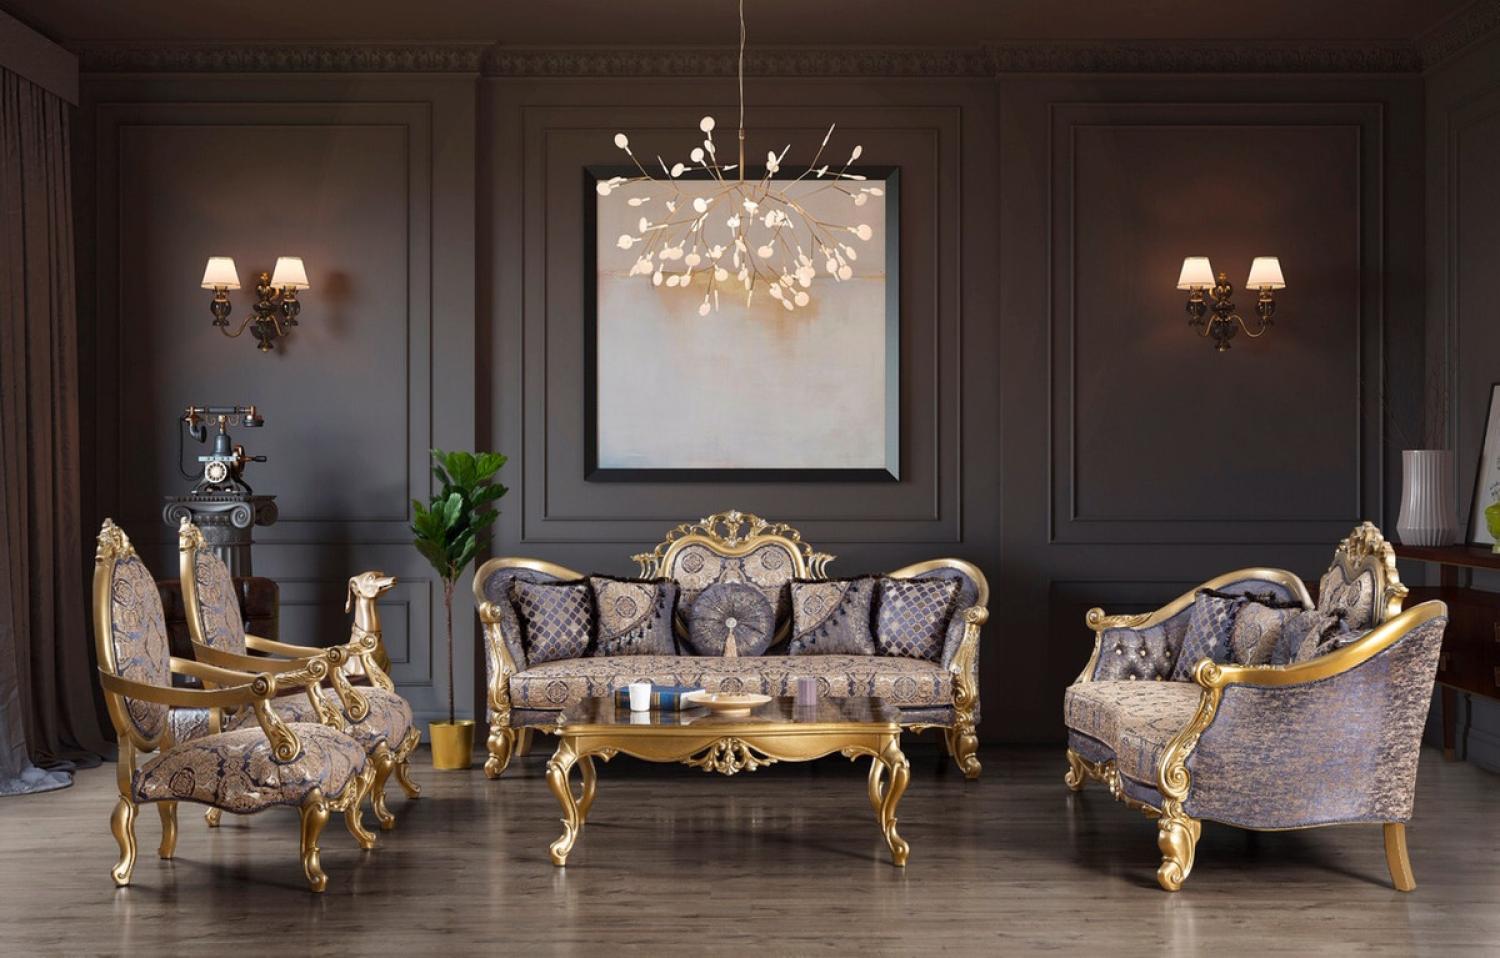 Casa Padrino Luxus Barock Wohnzimmer Set Blau / Gold / Silber - 2 Sofas & 2 Sessel & 1 Couchtisch - Wohnzimmer Möbel - Edel & Prunkvoll Bild 1